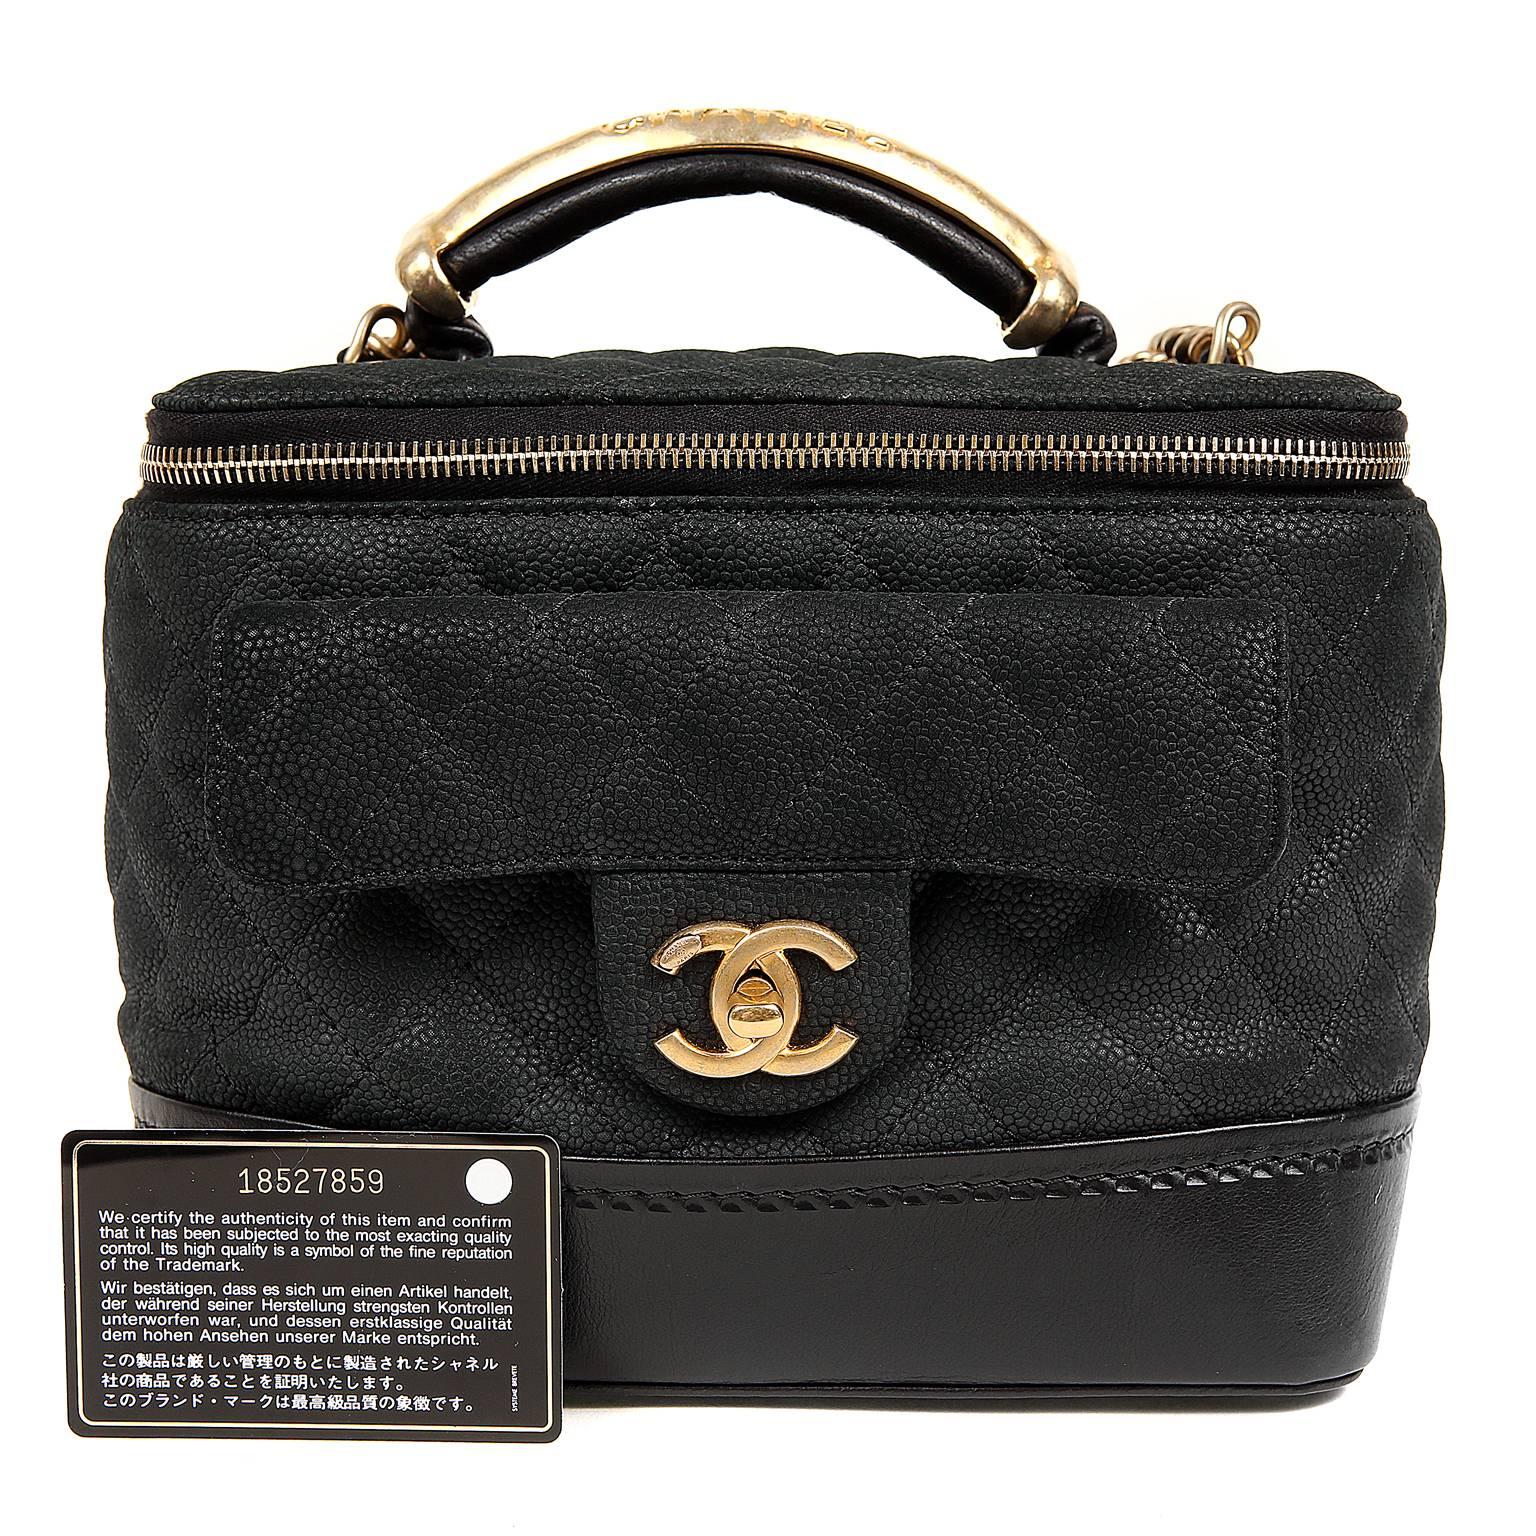 Chanel Black Leather Globetrotter Bag For Sale 6